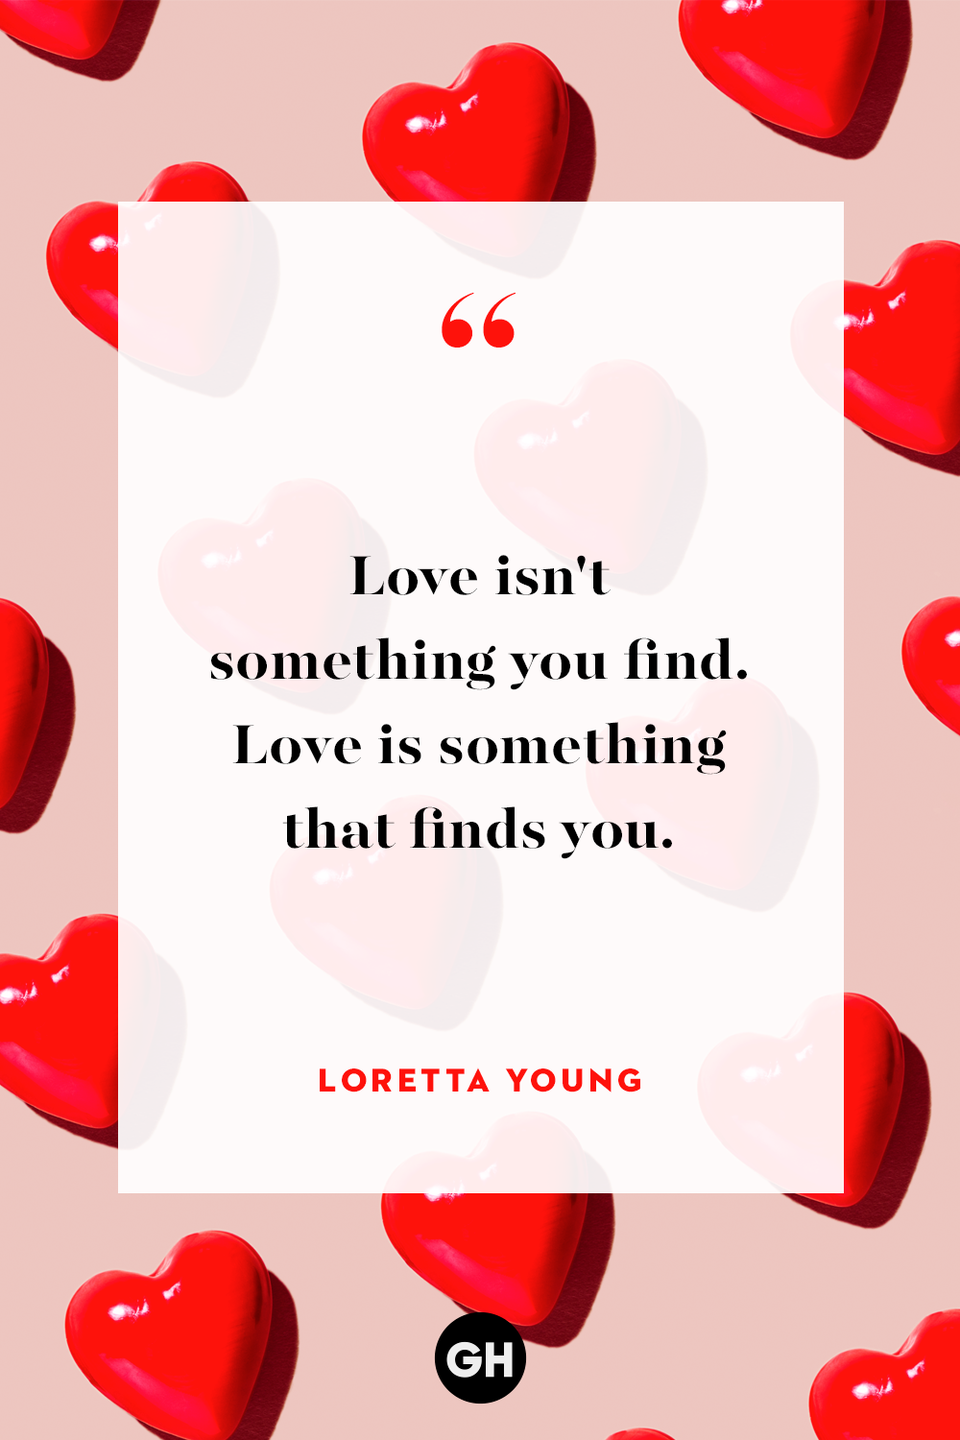 70) Loretta Young